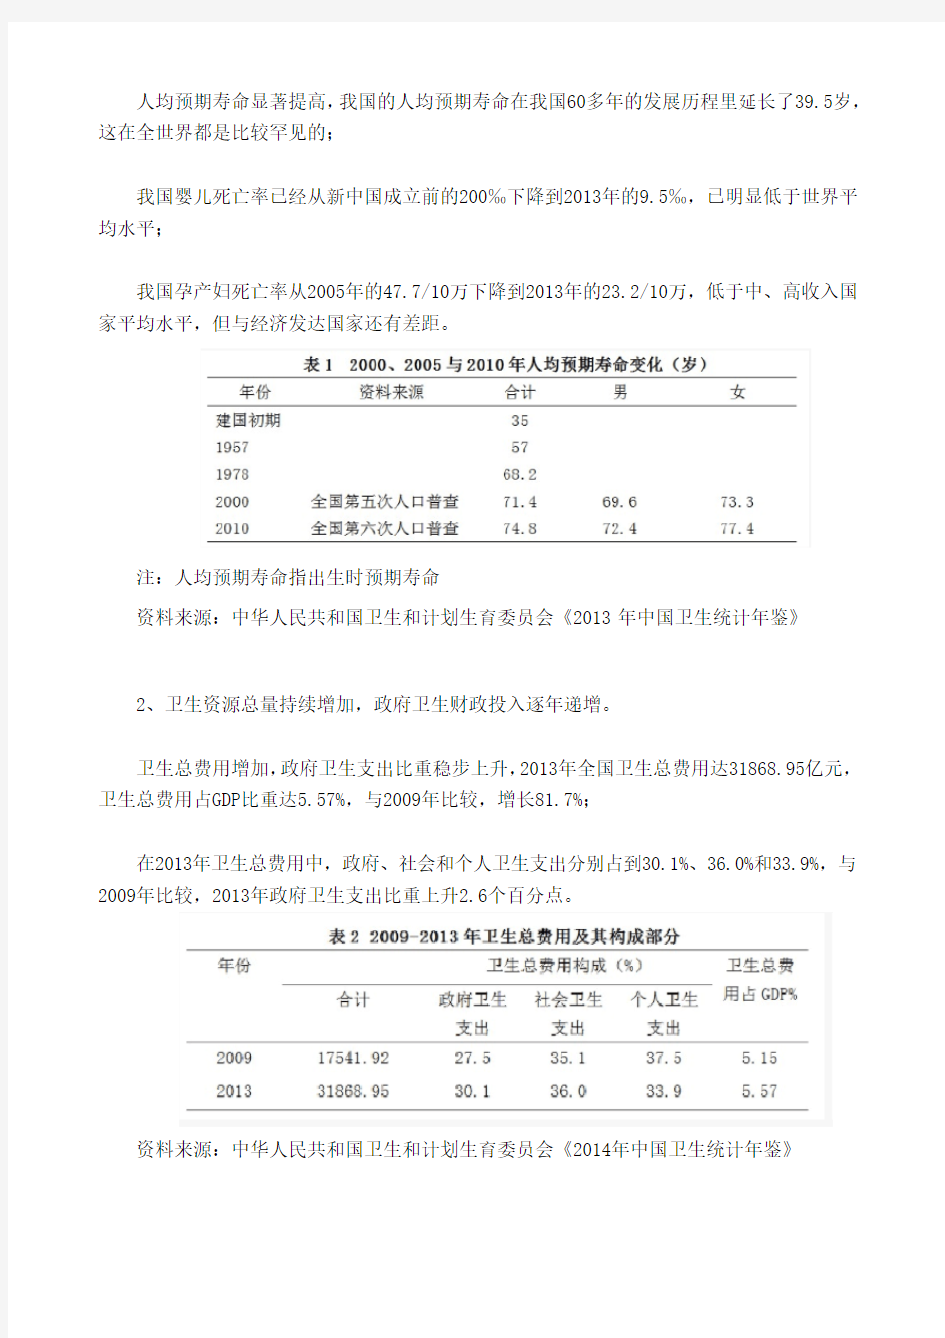 《中国医疗卫生事业发展报告2014》简版